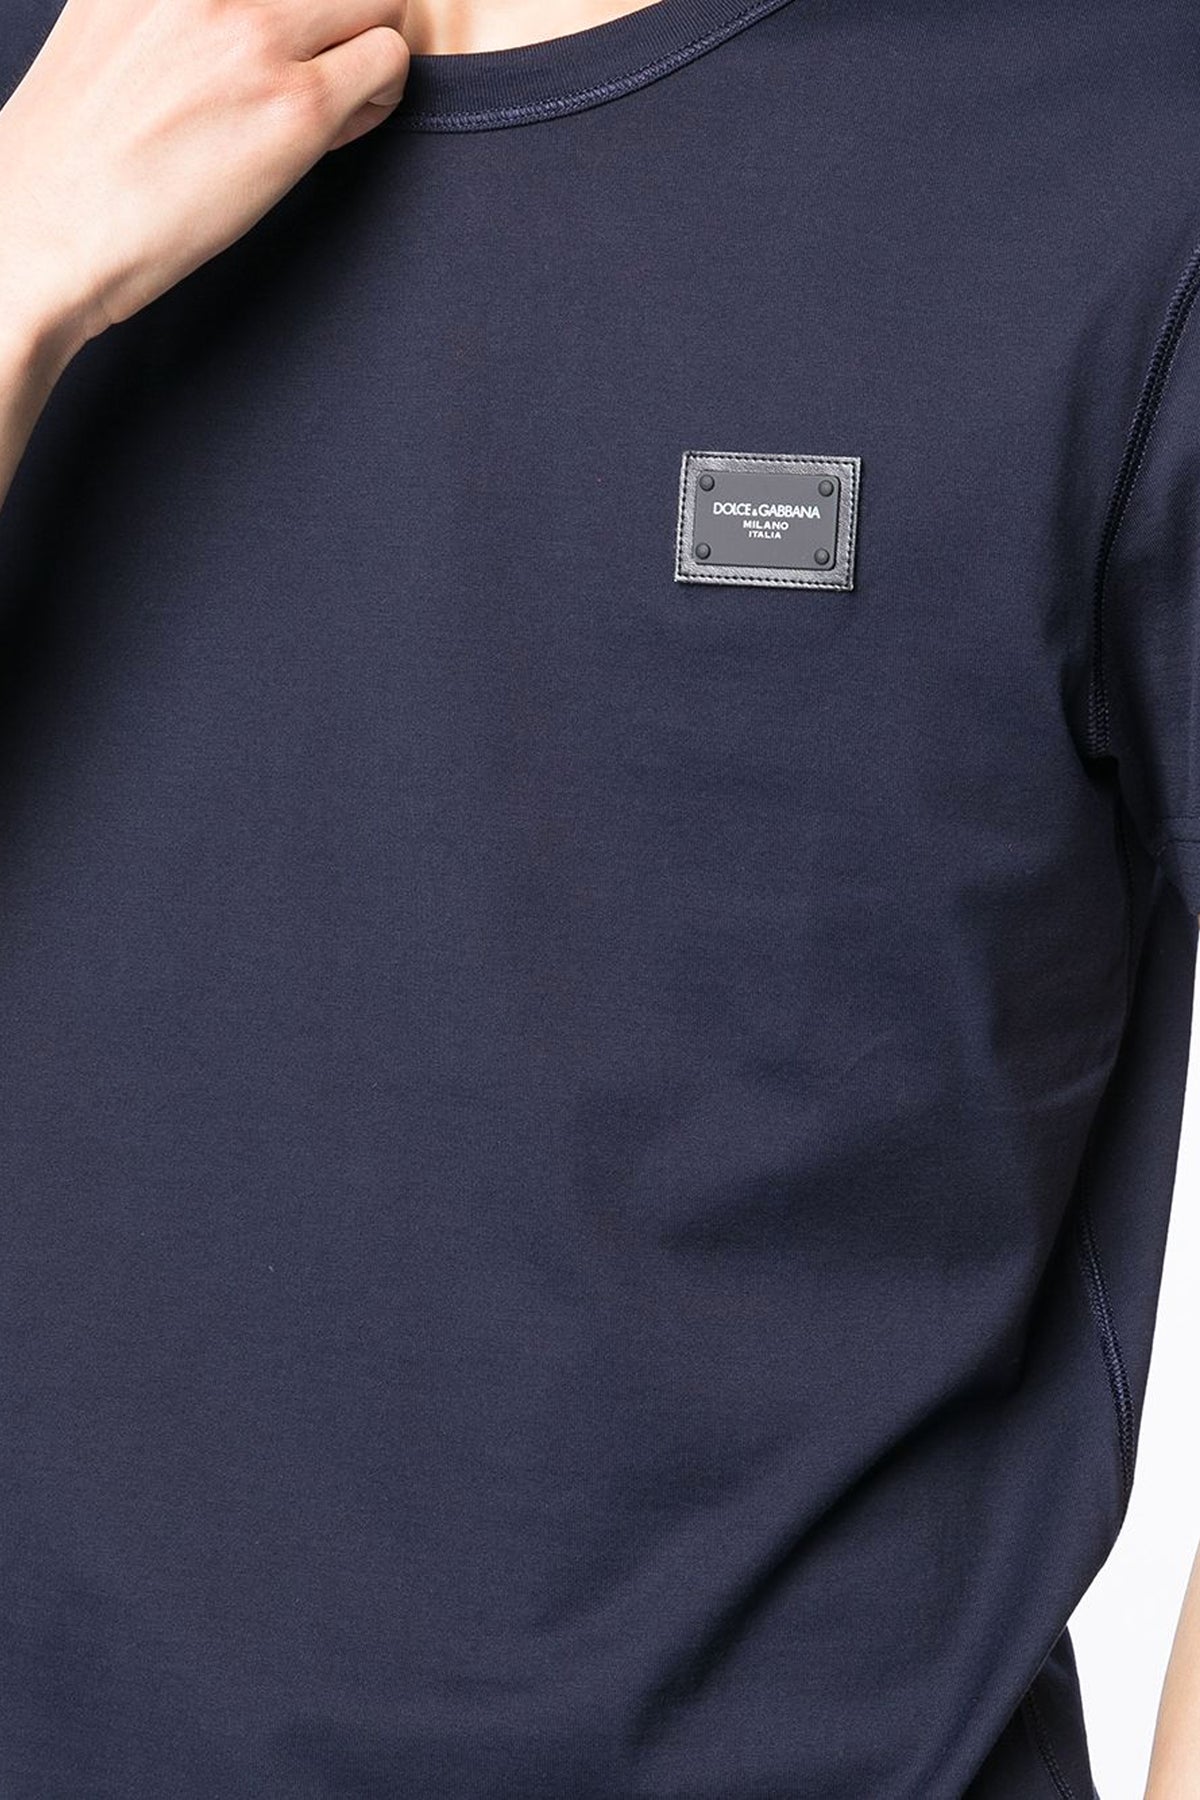 Dolce & Gabbana crew-neck t-shirt plate blue navy